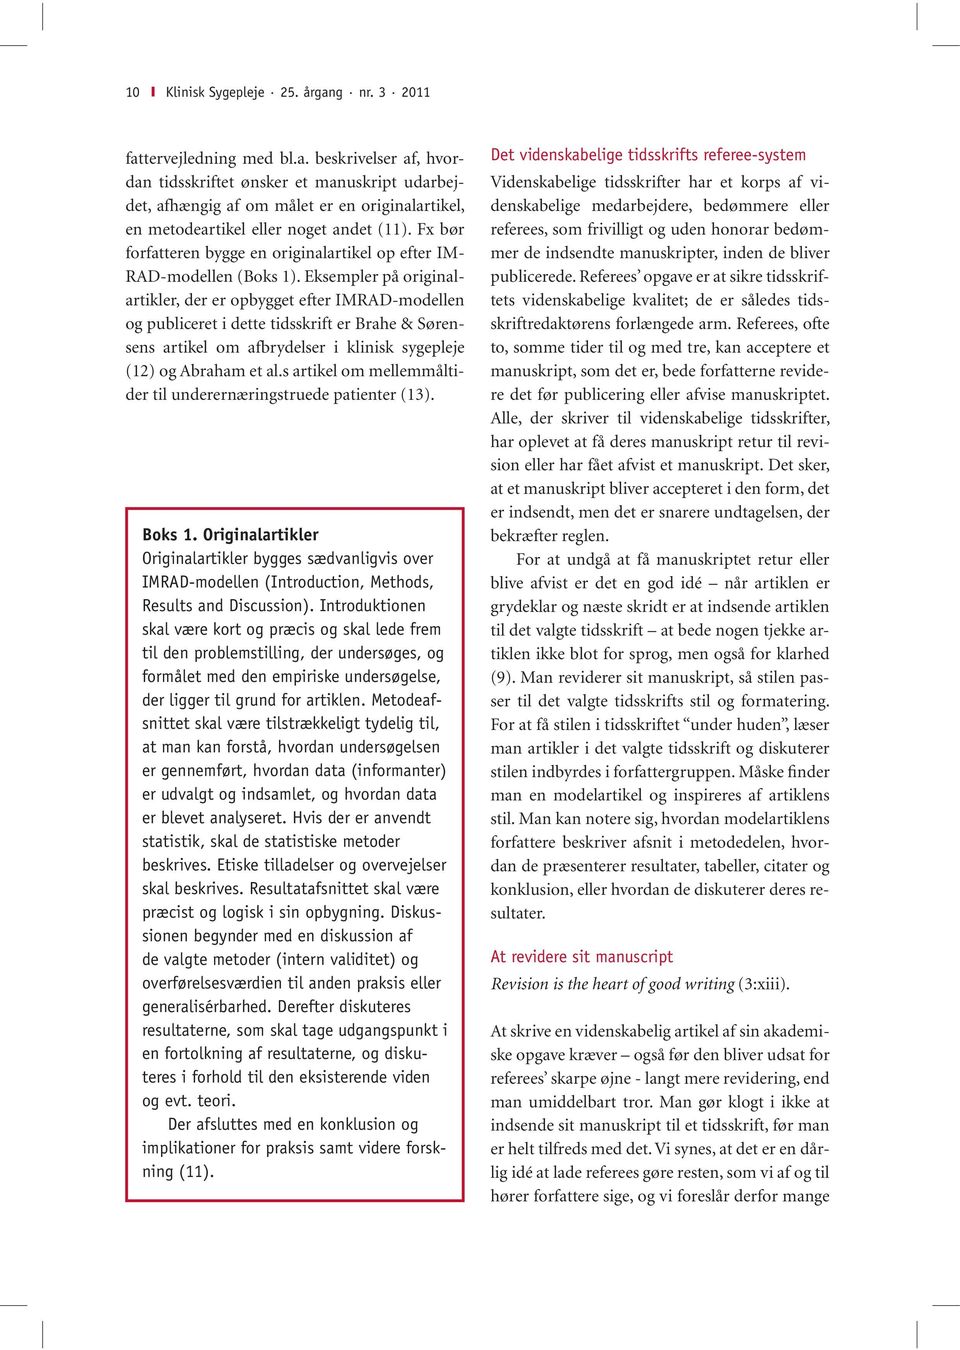 Eksempler på originalartikler, der er opbygget efter IMRAD-modellen og publiceret i dette tidsskrift er Brahe & Sørensens artikel om afbrydelser i klinisk sygepleje (12) og Abraham et al.